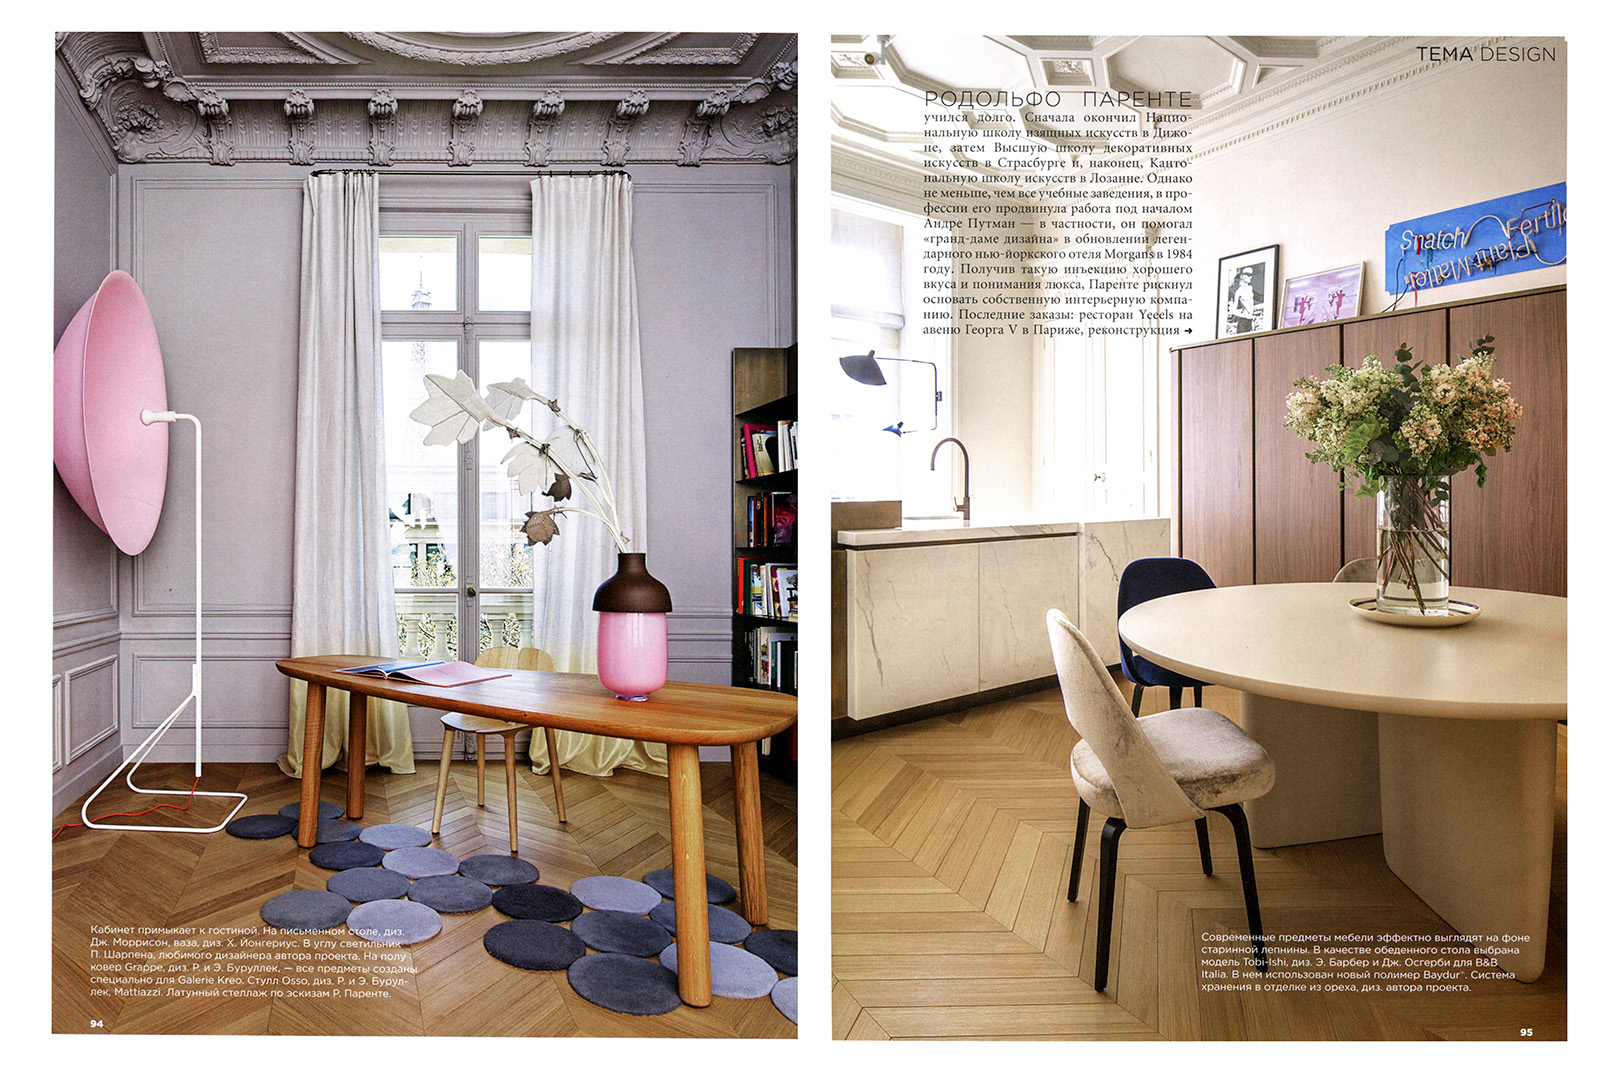 Rodolphe-Parente-Interior-Design-Magazine-2015-03